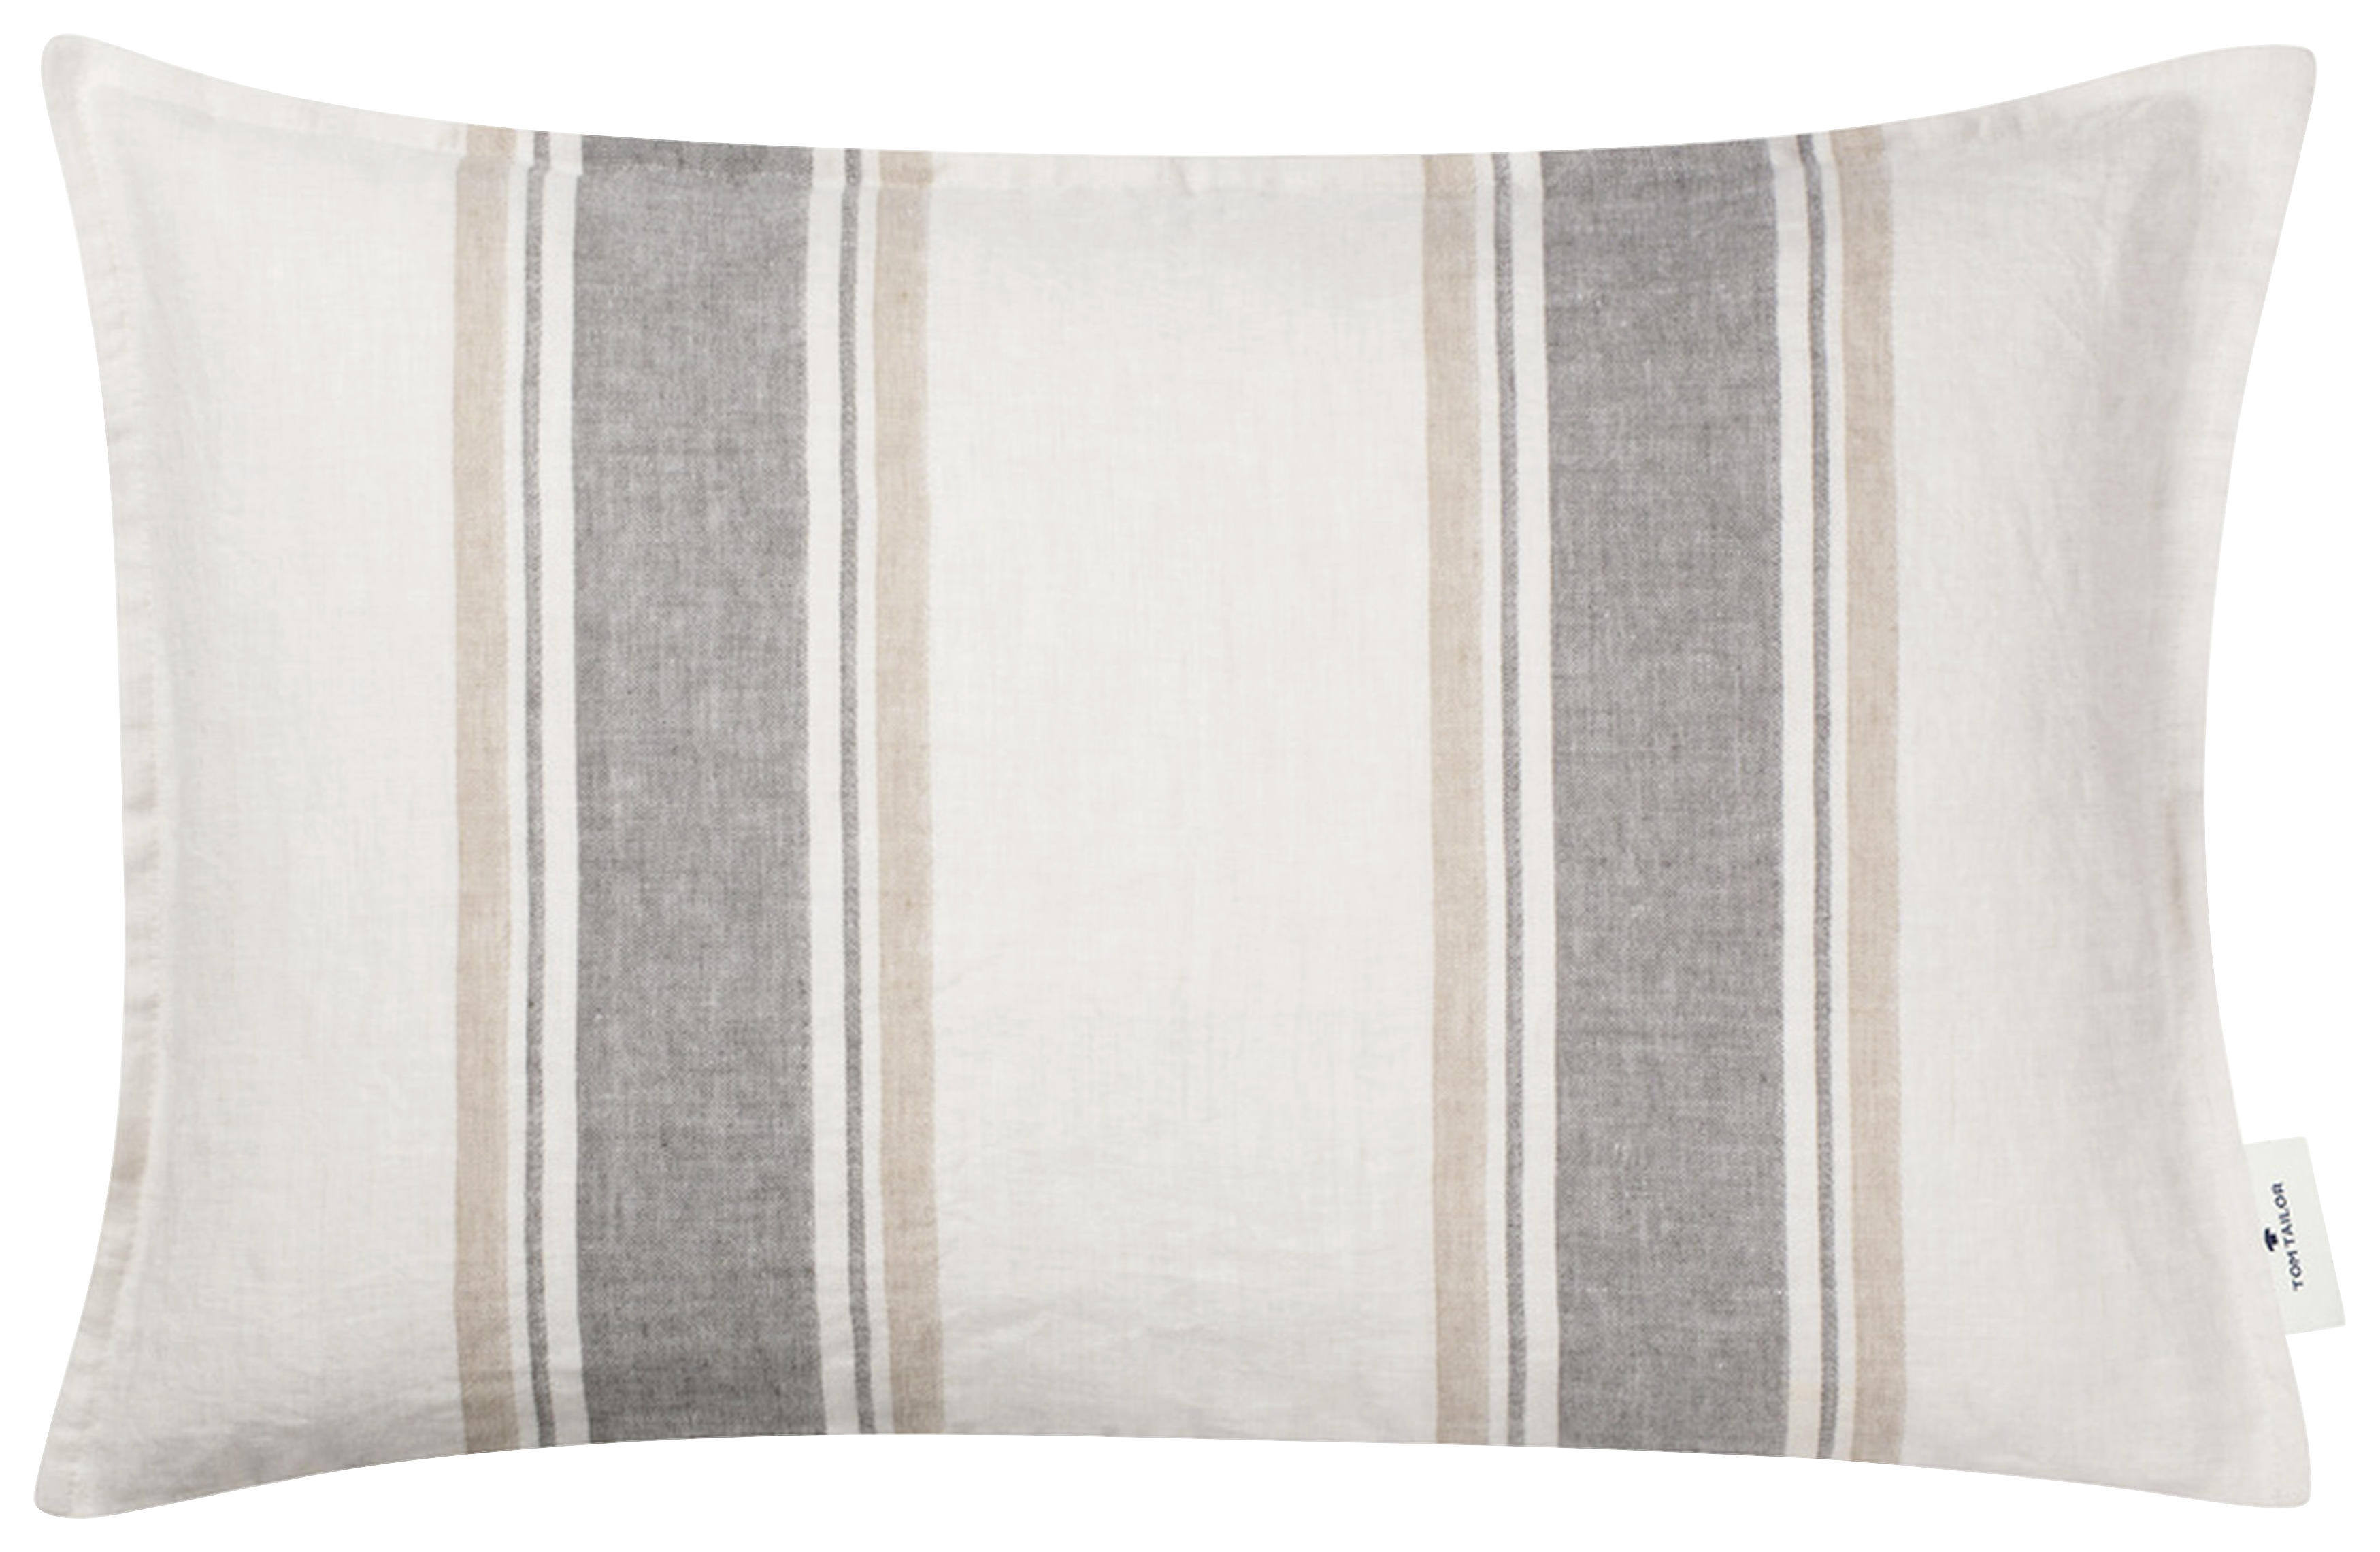 KISSENHÜLLE Linen 40/60 cm  - Sandfarben/Beige, KONVENTIONELL, Textil (40/60cm) - Tom Tailor